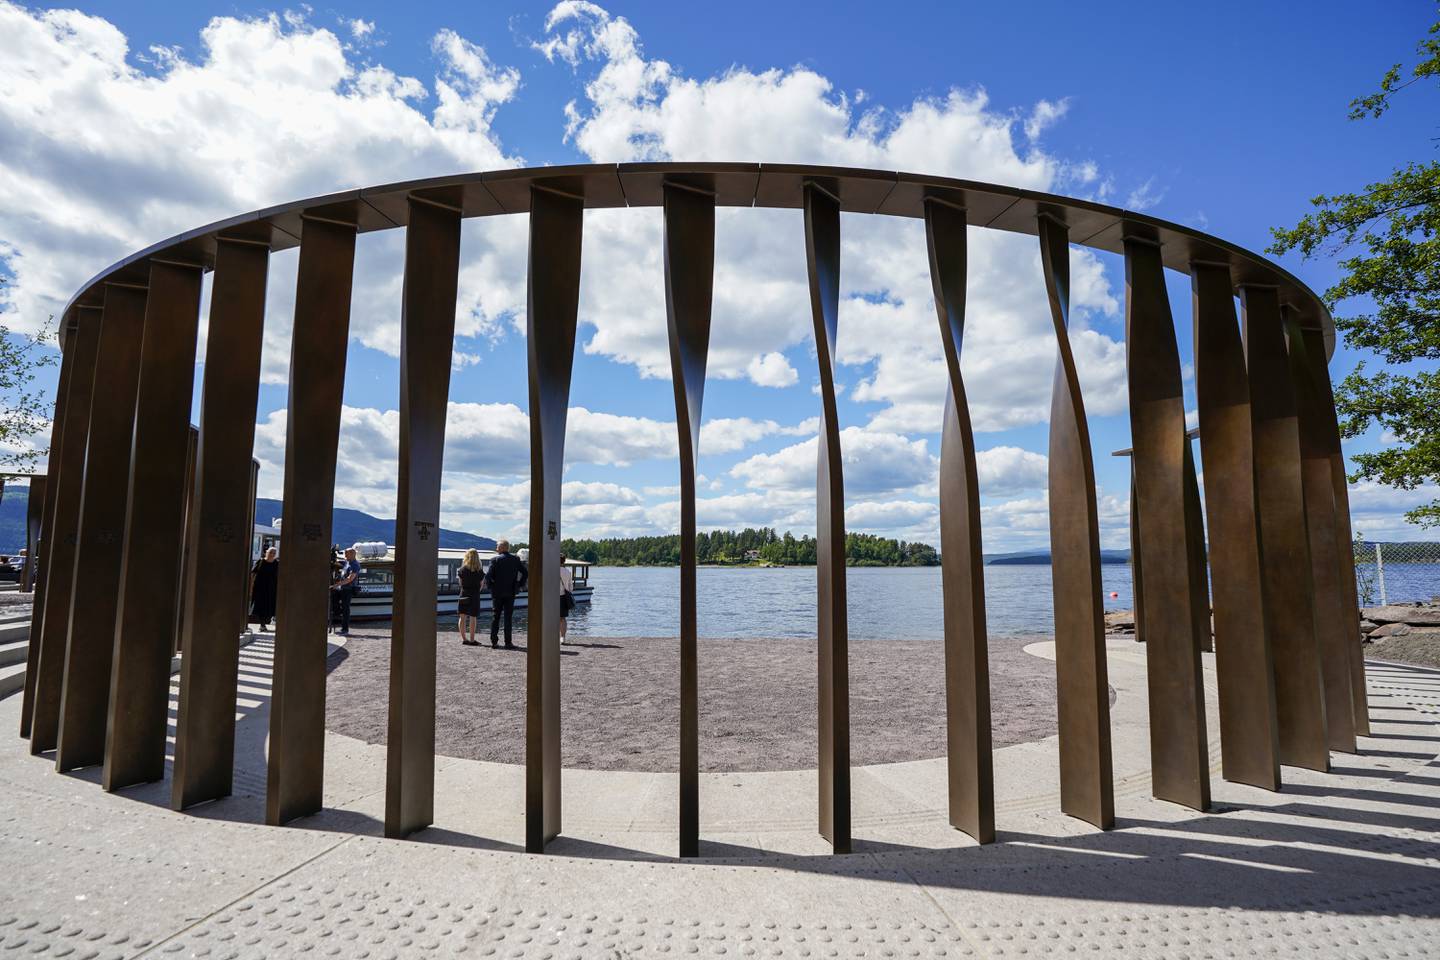 Det nasjonale minnestedet etter 22. juli-terroren åpner lørdag. Foto: Lise Åserud / NTB